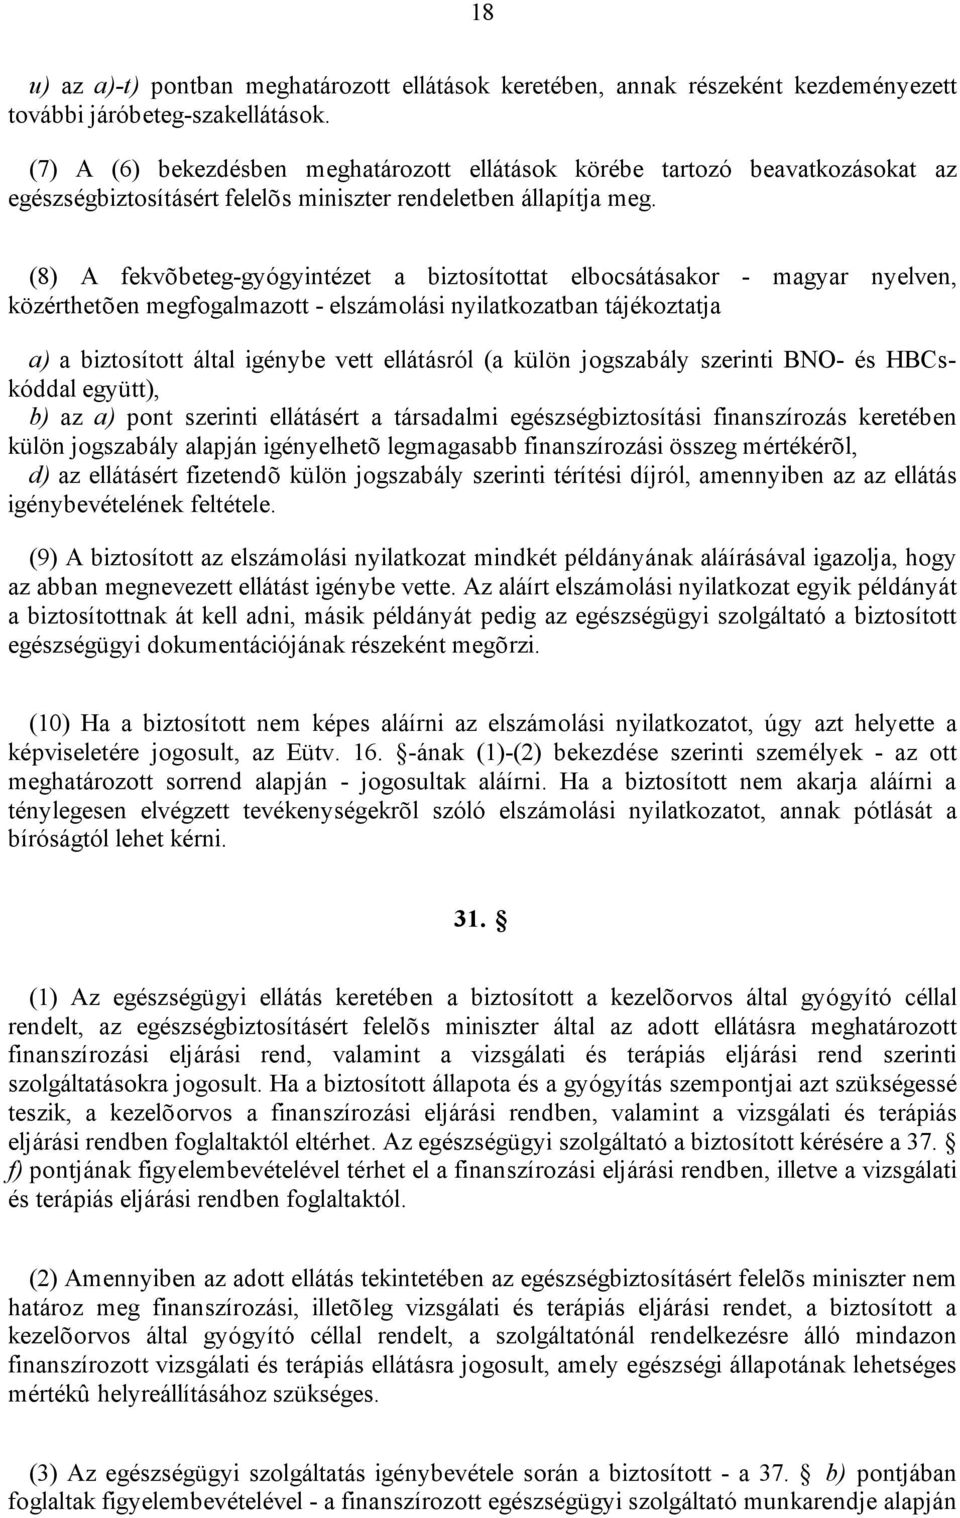 (8) A fekvõbeteg-gyógyintézet a biztosítottat elbocsátásakor - magyar nyelven, közérthetõen megfogalmazott - elszámolási nyilatkozatban tájékoztatja a) a biztosított által igénybe vett ellátásról (a